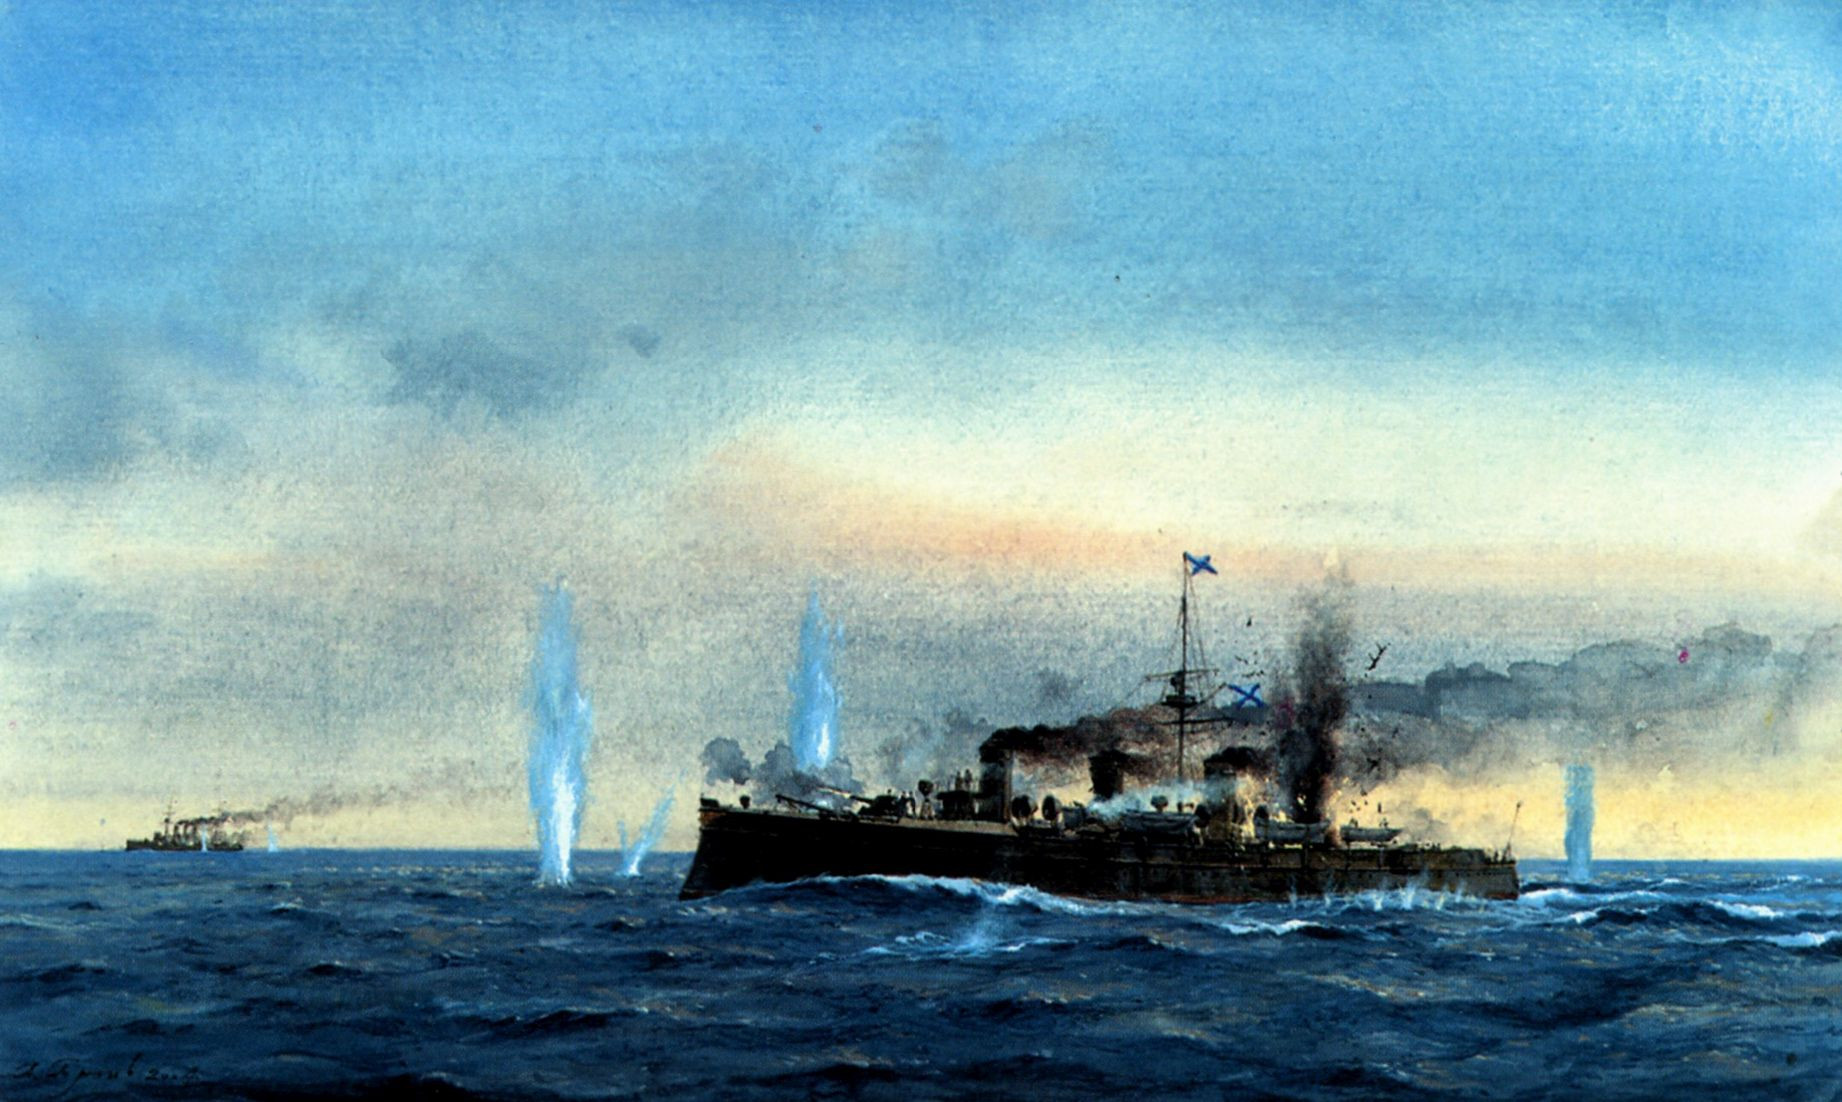 Pojedynek pomiędzy krążownikami nowik i Tsushima koło Korsakowska na Sachalinie (Nowik przerwał blokadę po bitwie na M. Żółtym, ale koło Korsakowska został przechwycony przez Tsushimę). W walce nowik zostal ciężko uszkodzony i po powrocie do Korsakowska zatopiony przez własną załogę.